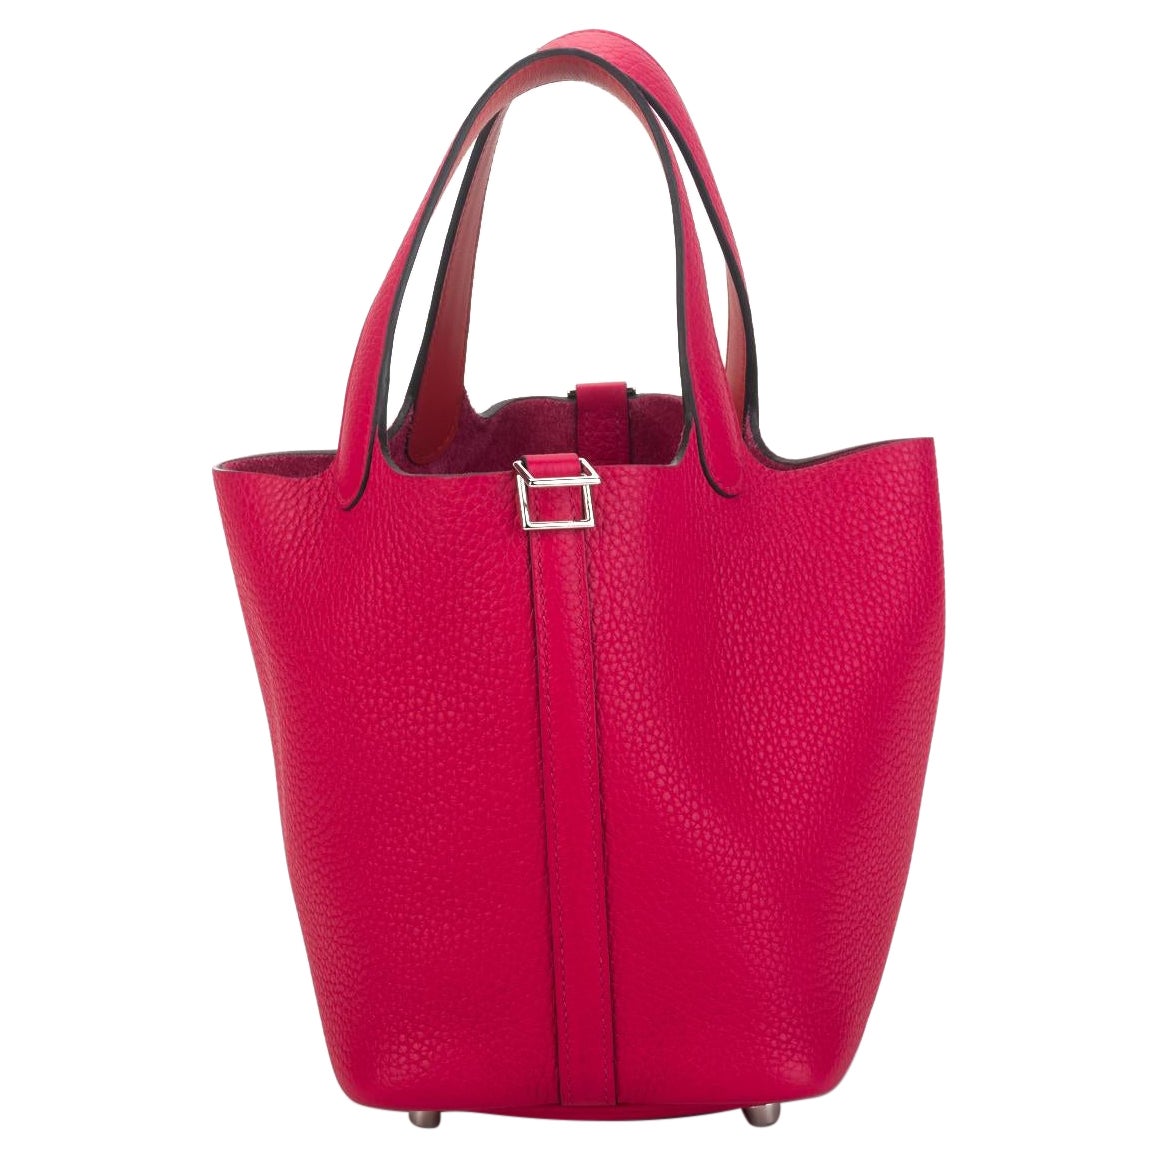 New in Box Hermès 18cm Rose Mexico Picotin Bag